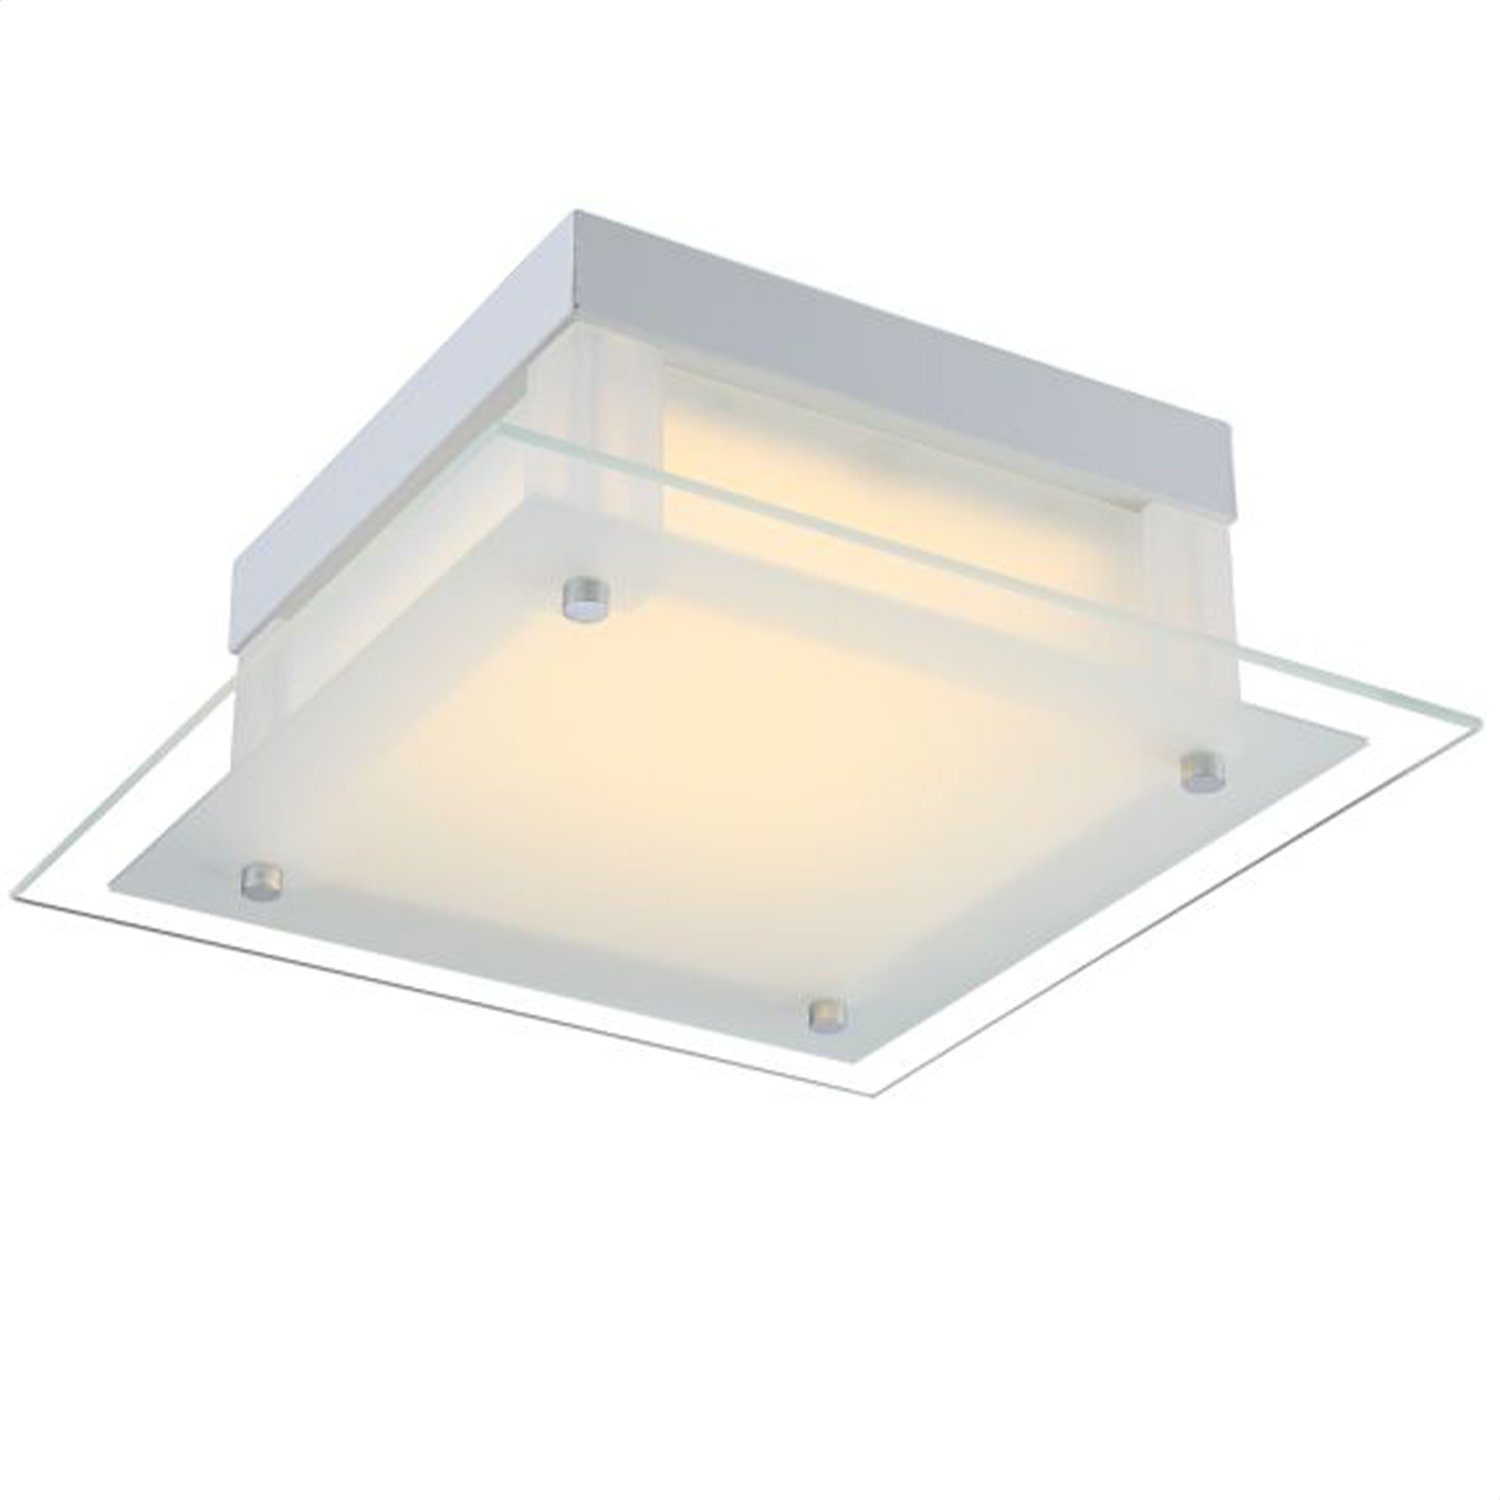 Eckig GLOBO LED Flur Deckenlampe Küche Deckenleuchte Globo Wohnzimmer Deckenleuchte Glas